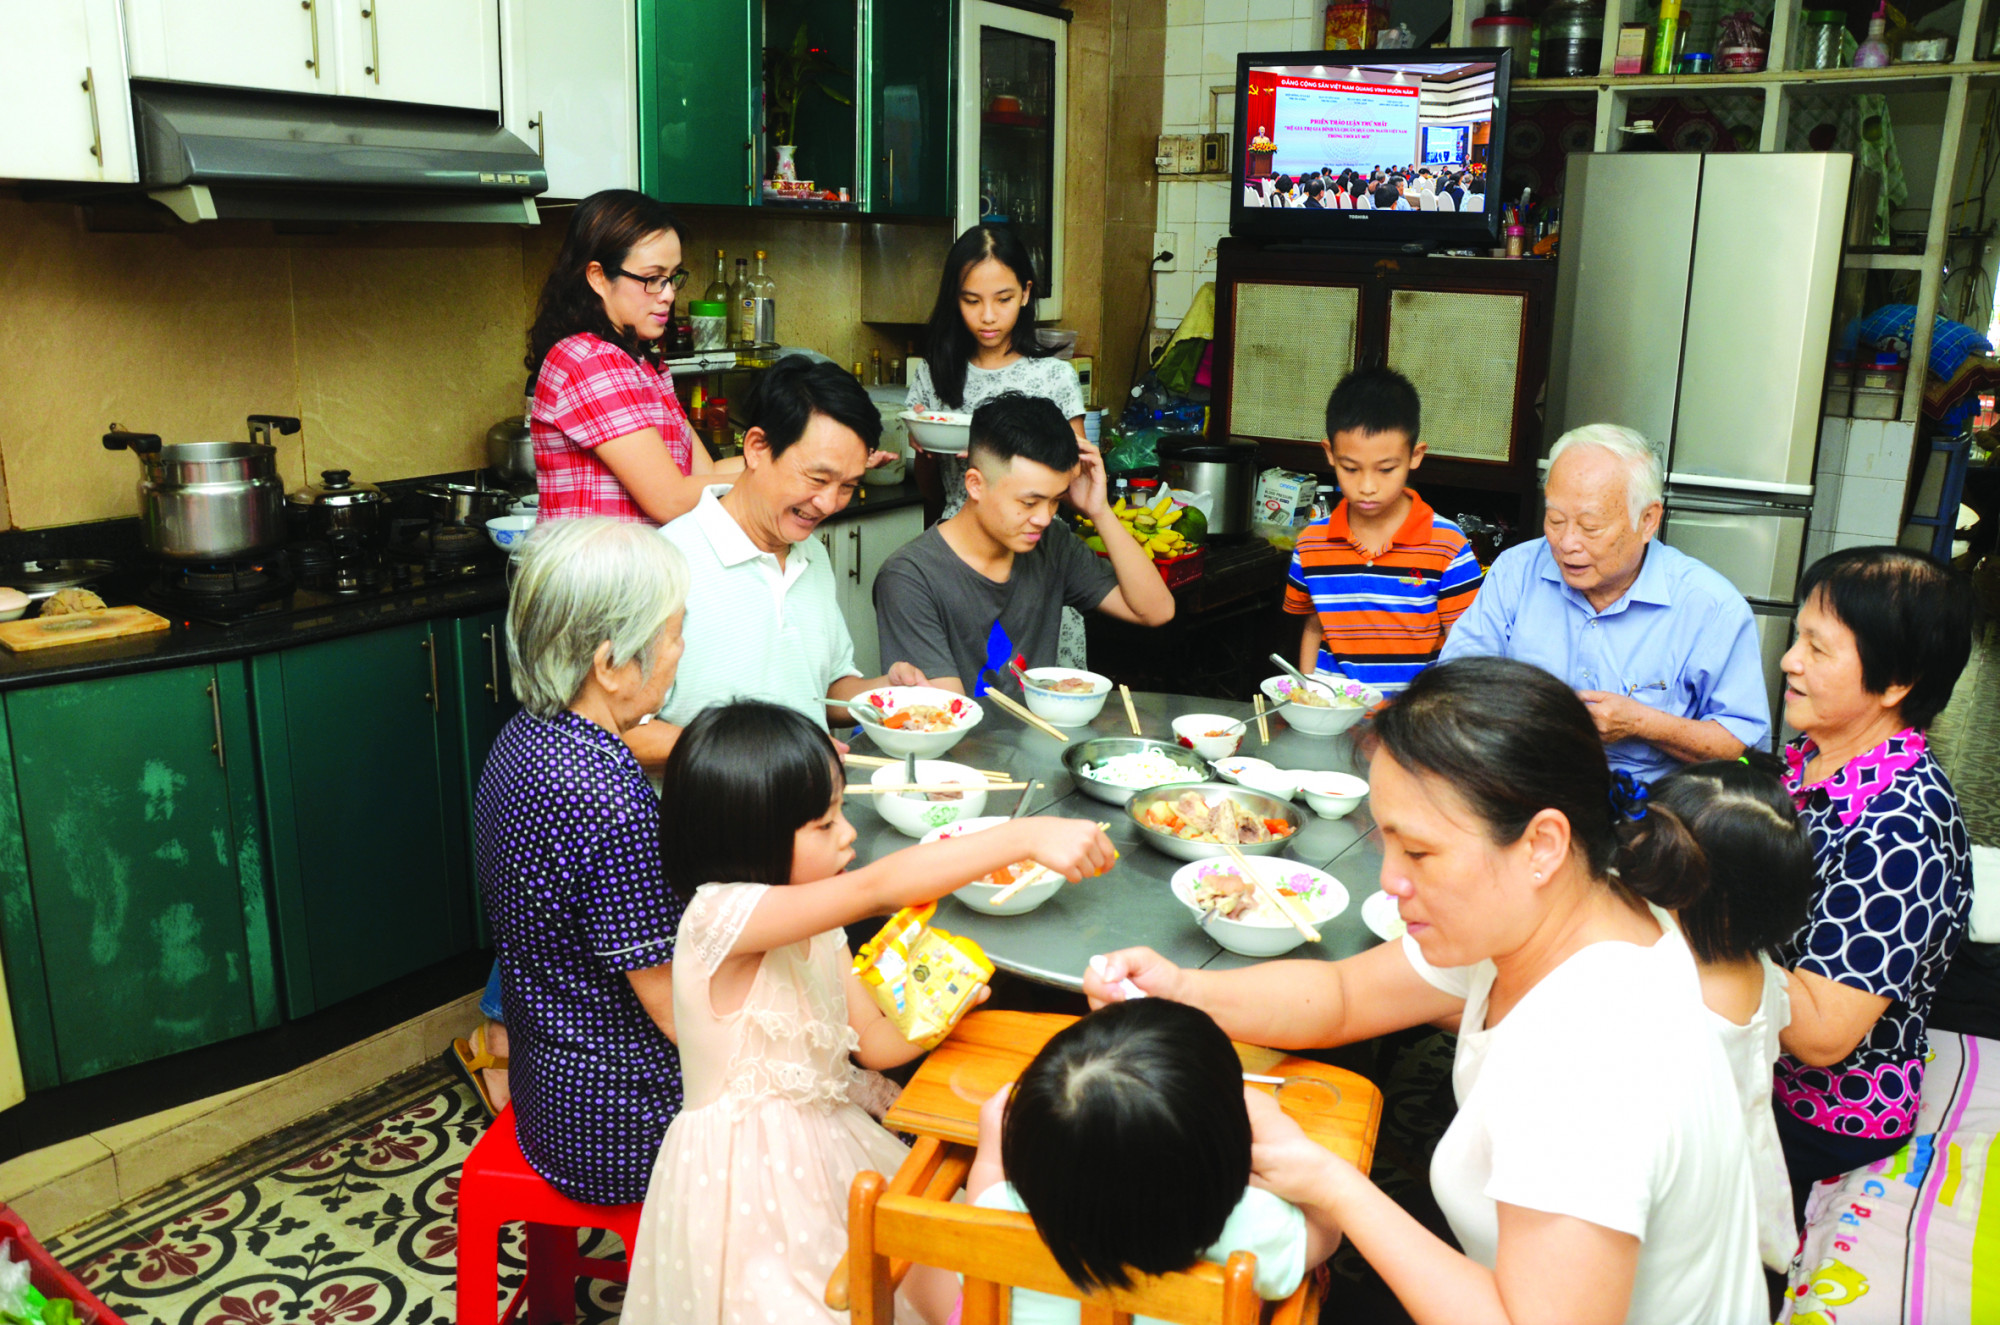 Bữa cơm gia đình là nơi hội tụ, đoàn kết, gặp gỡ và gắn bó hơn các thành viên trong gia đình với nhau (trong ảnh: Một đại gia đình ở TPHCM được Hội LHPN TPHCM ghi nhận là gia đình văn hóa - hạnh phúc) Ảnh: Phùng Huy